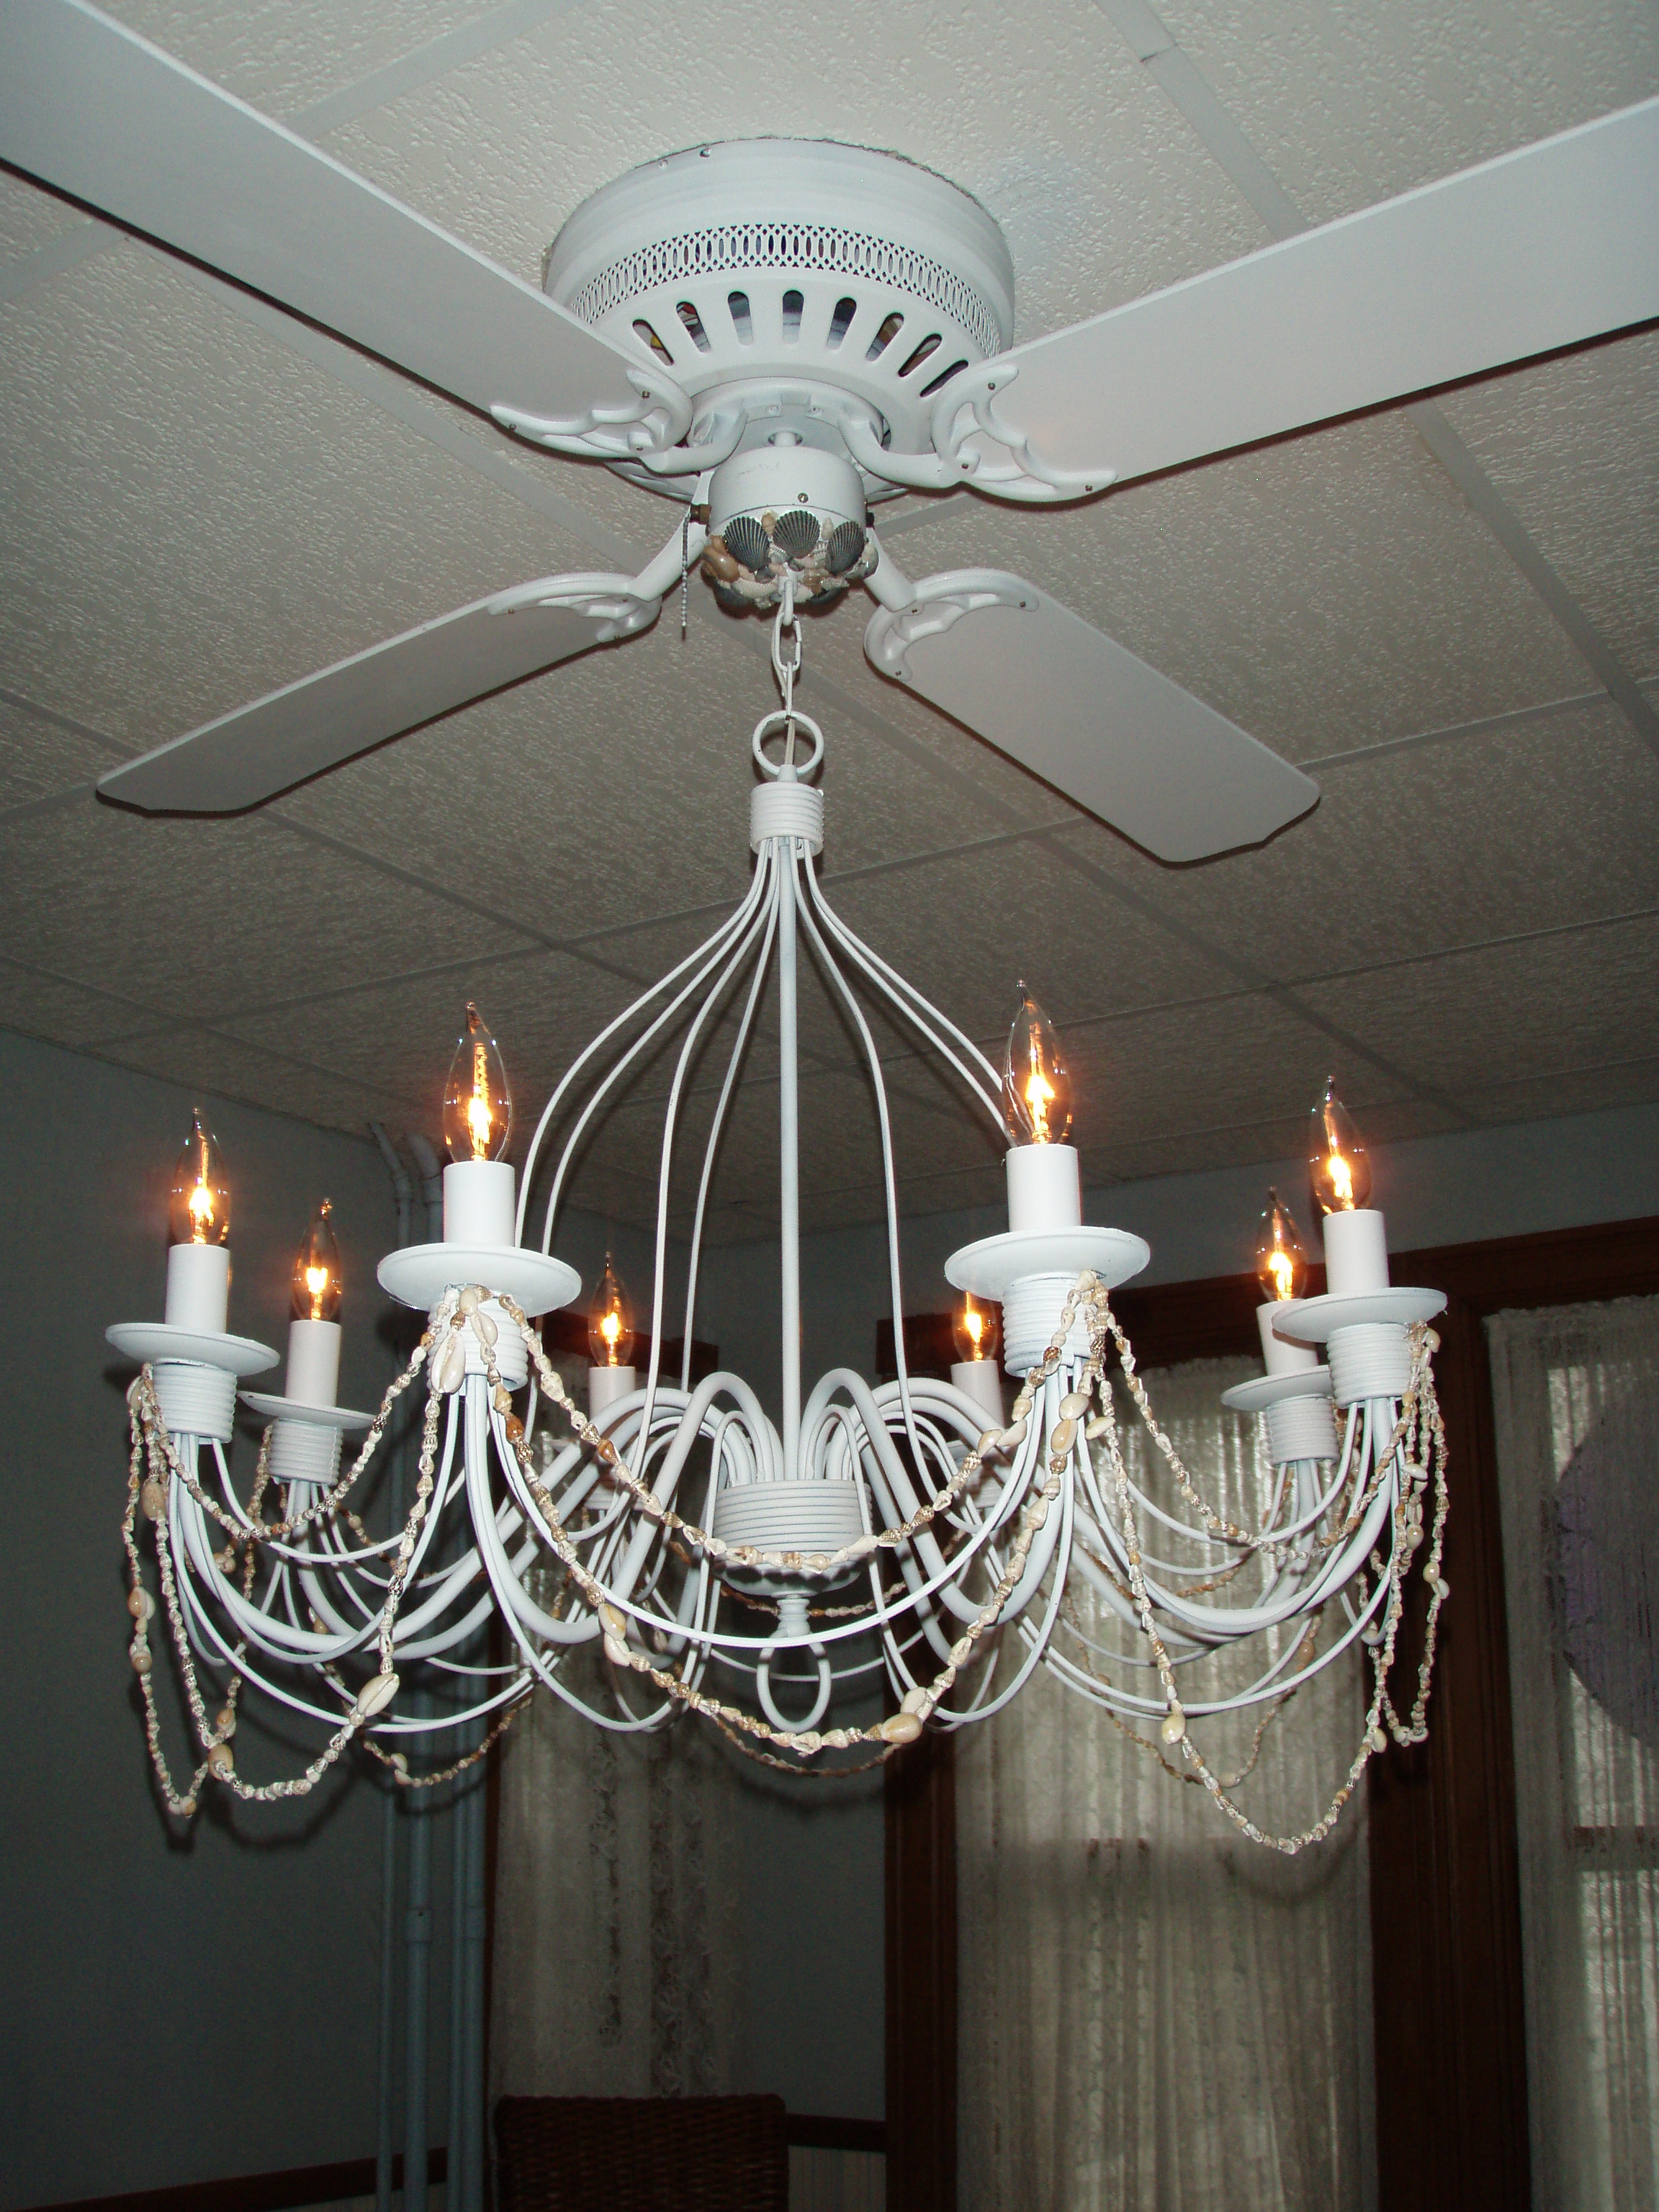 ceiling fan chandelier combo photo - 4